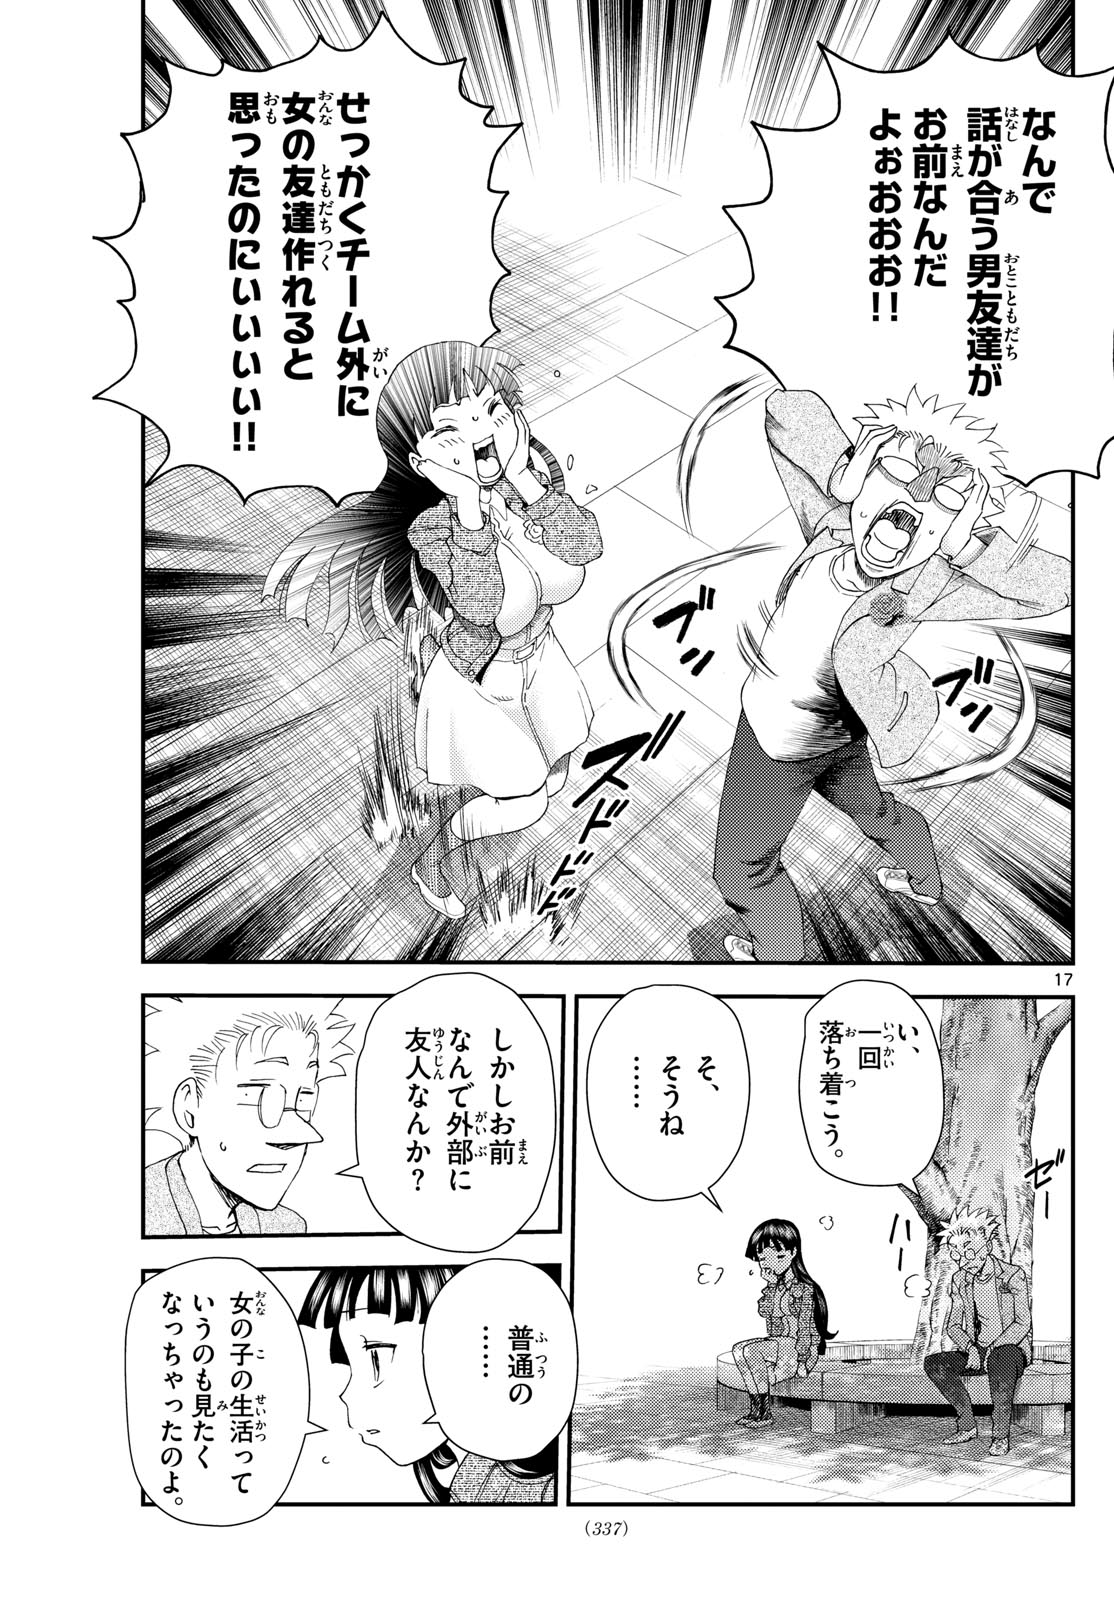 Kimi wa 008 - Chapter 295 - Page 17